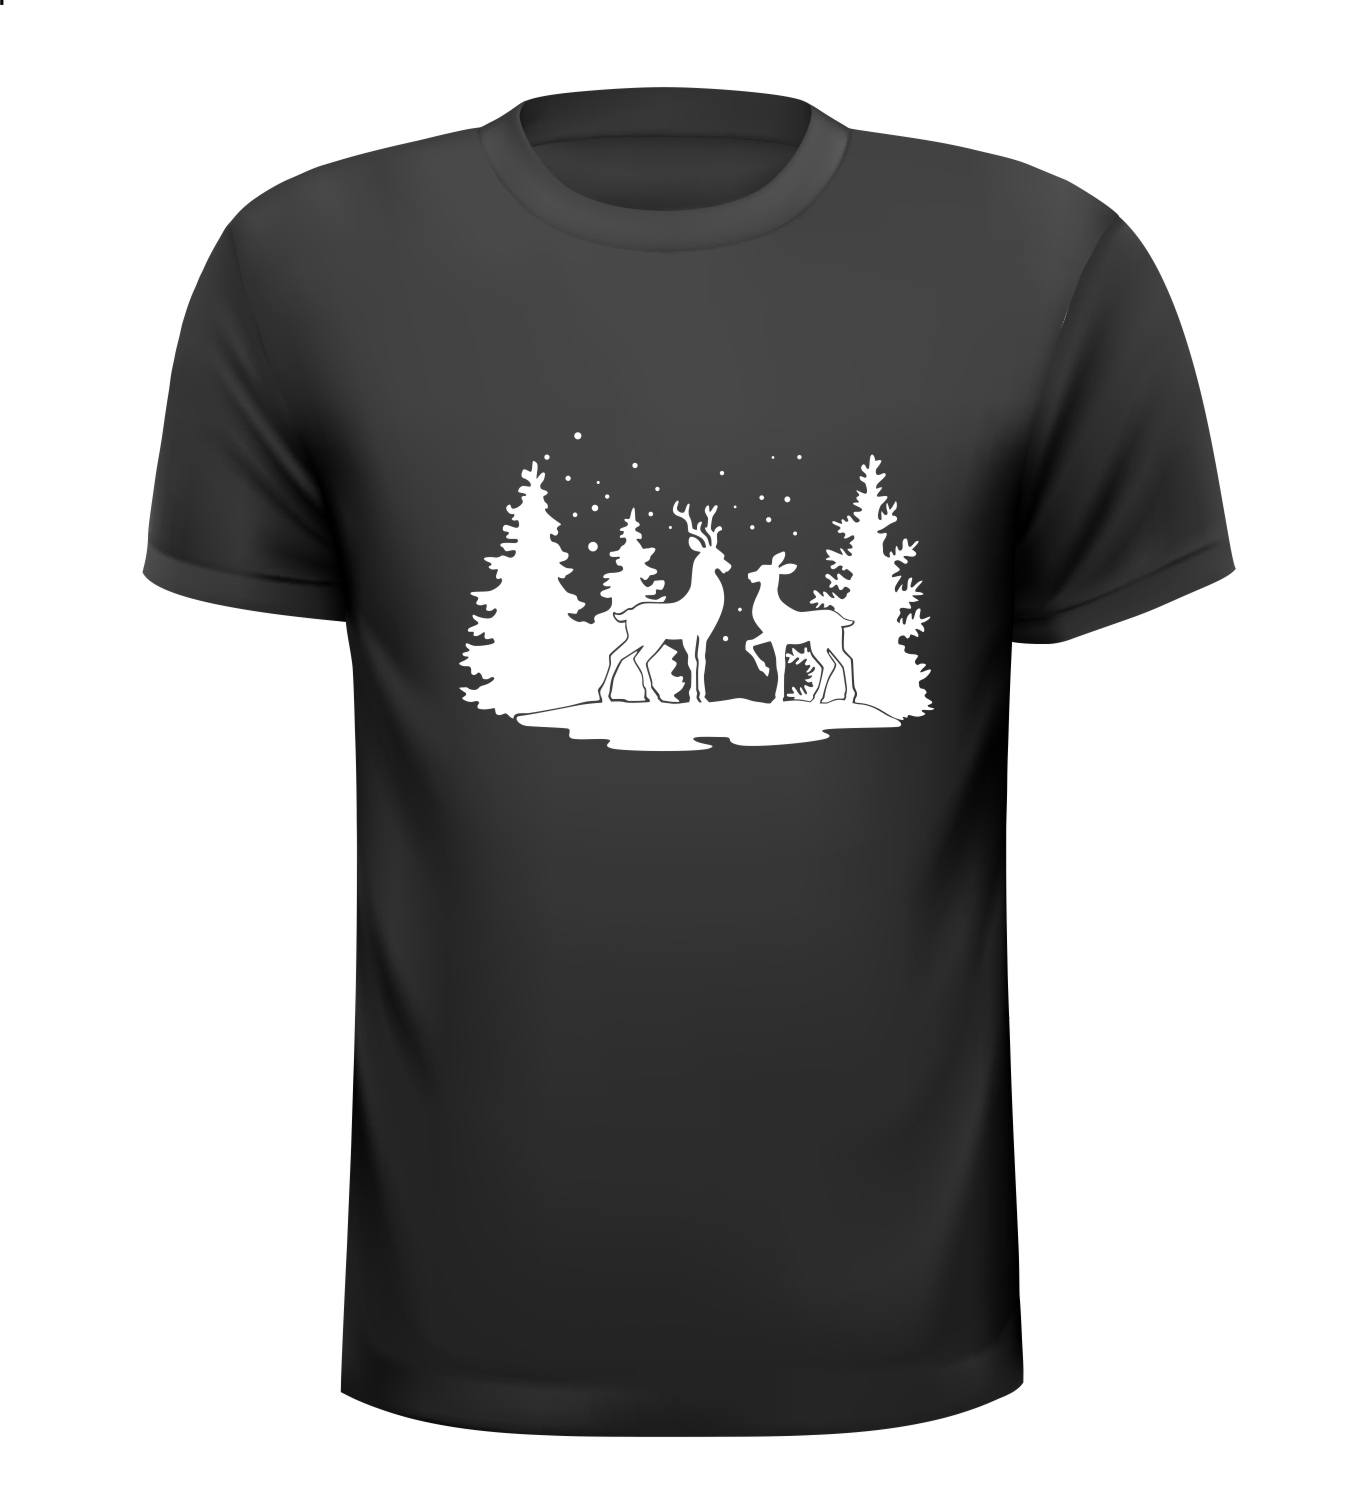 T-shirt met een mooie kerst print met rendieren in het bos